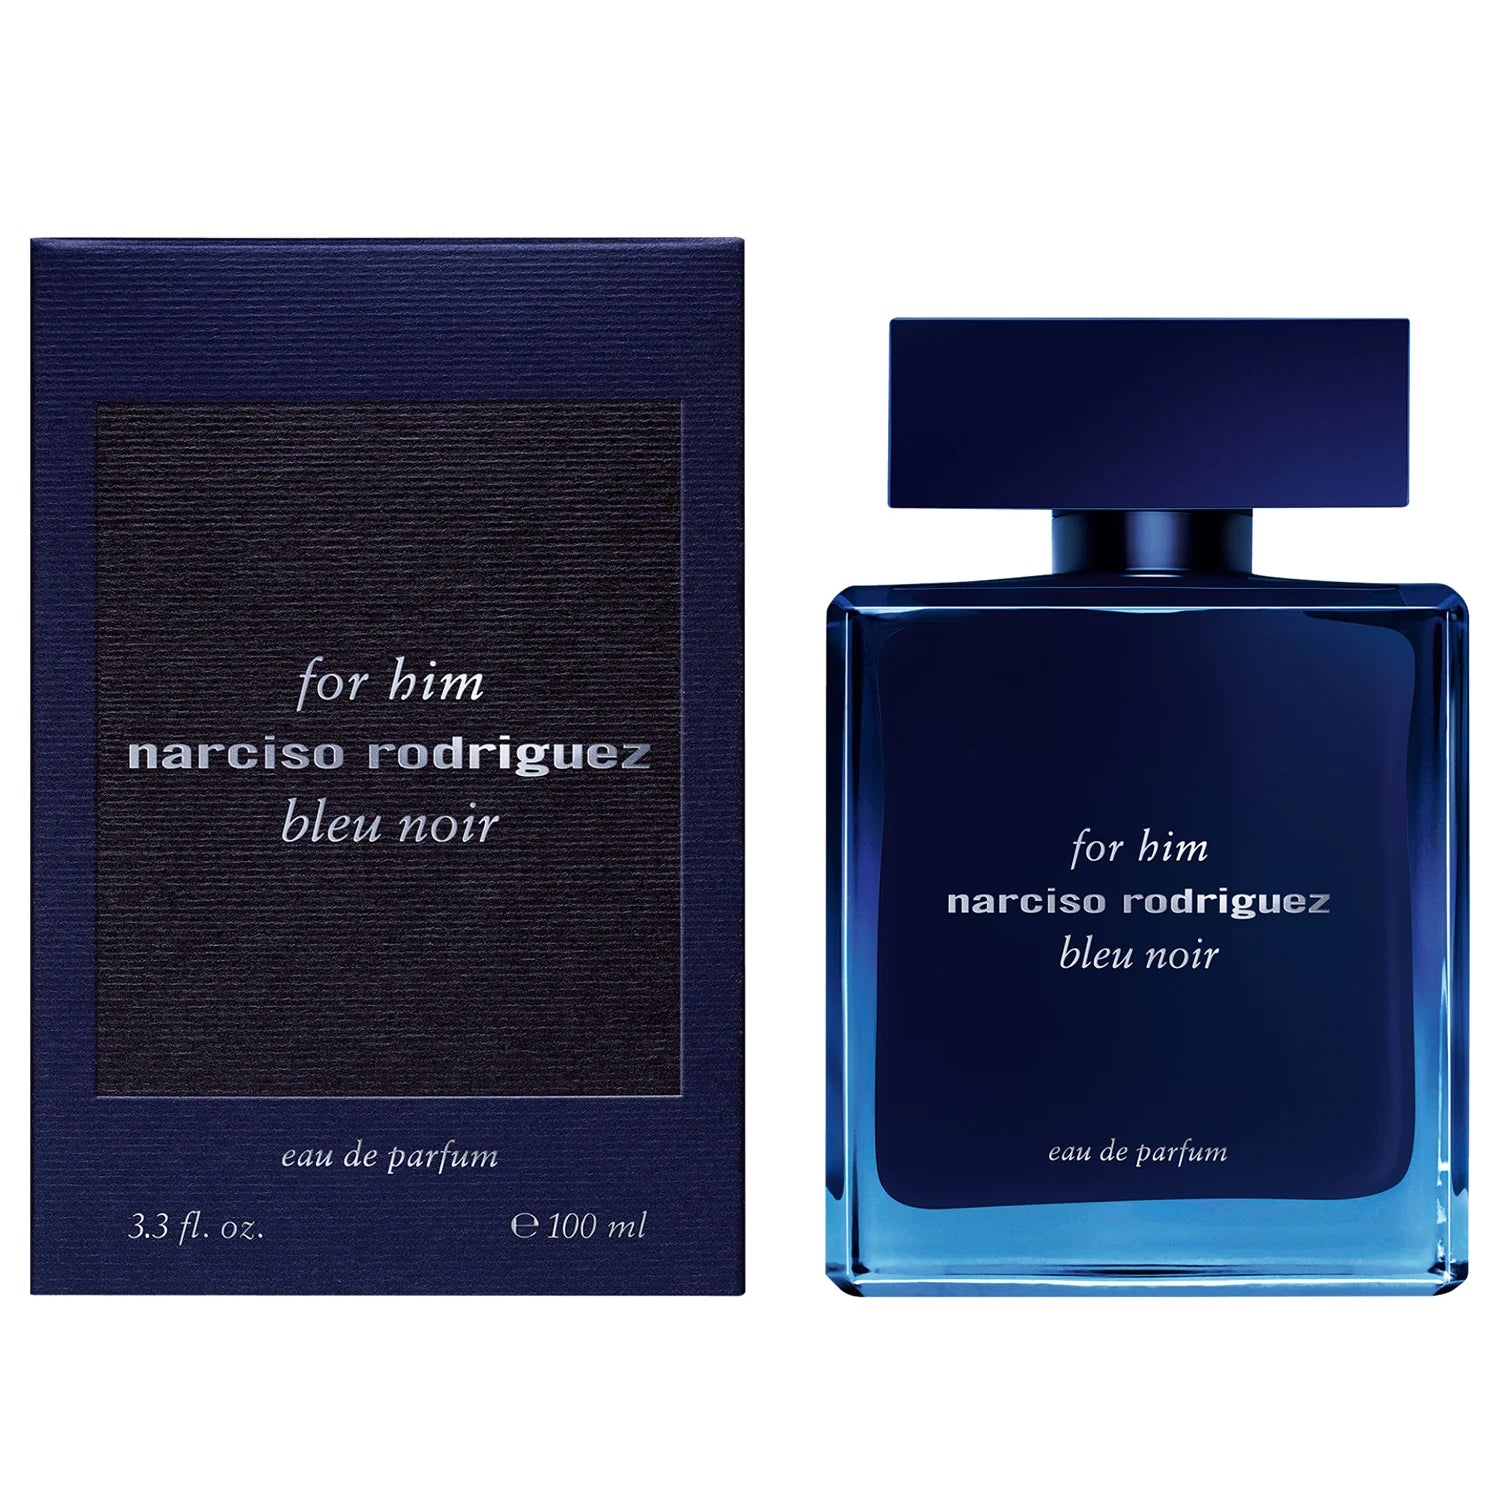 Narciso Rodriguez - For Him Bleu Noir - Eau de Parfum